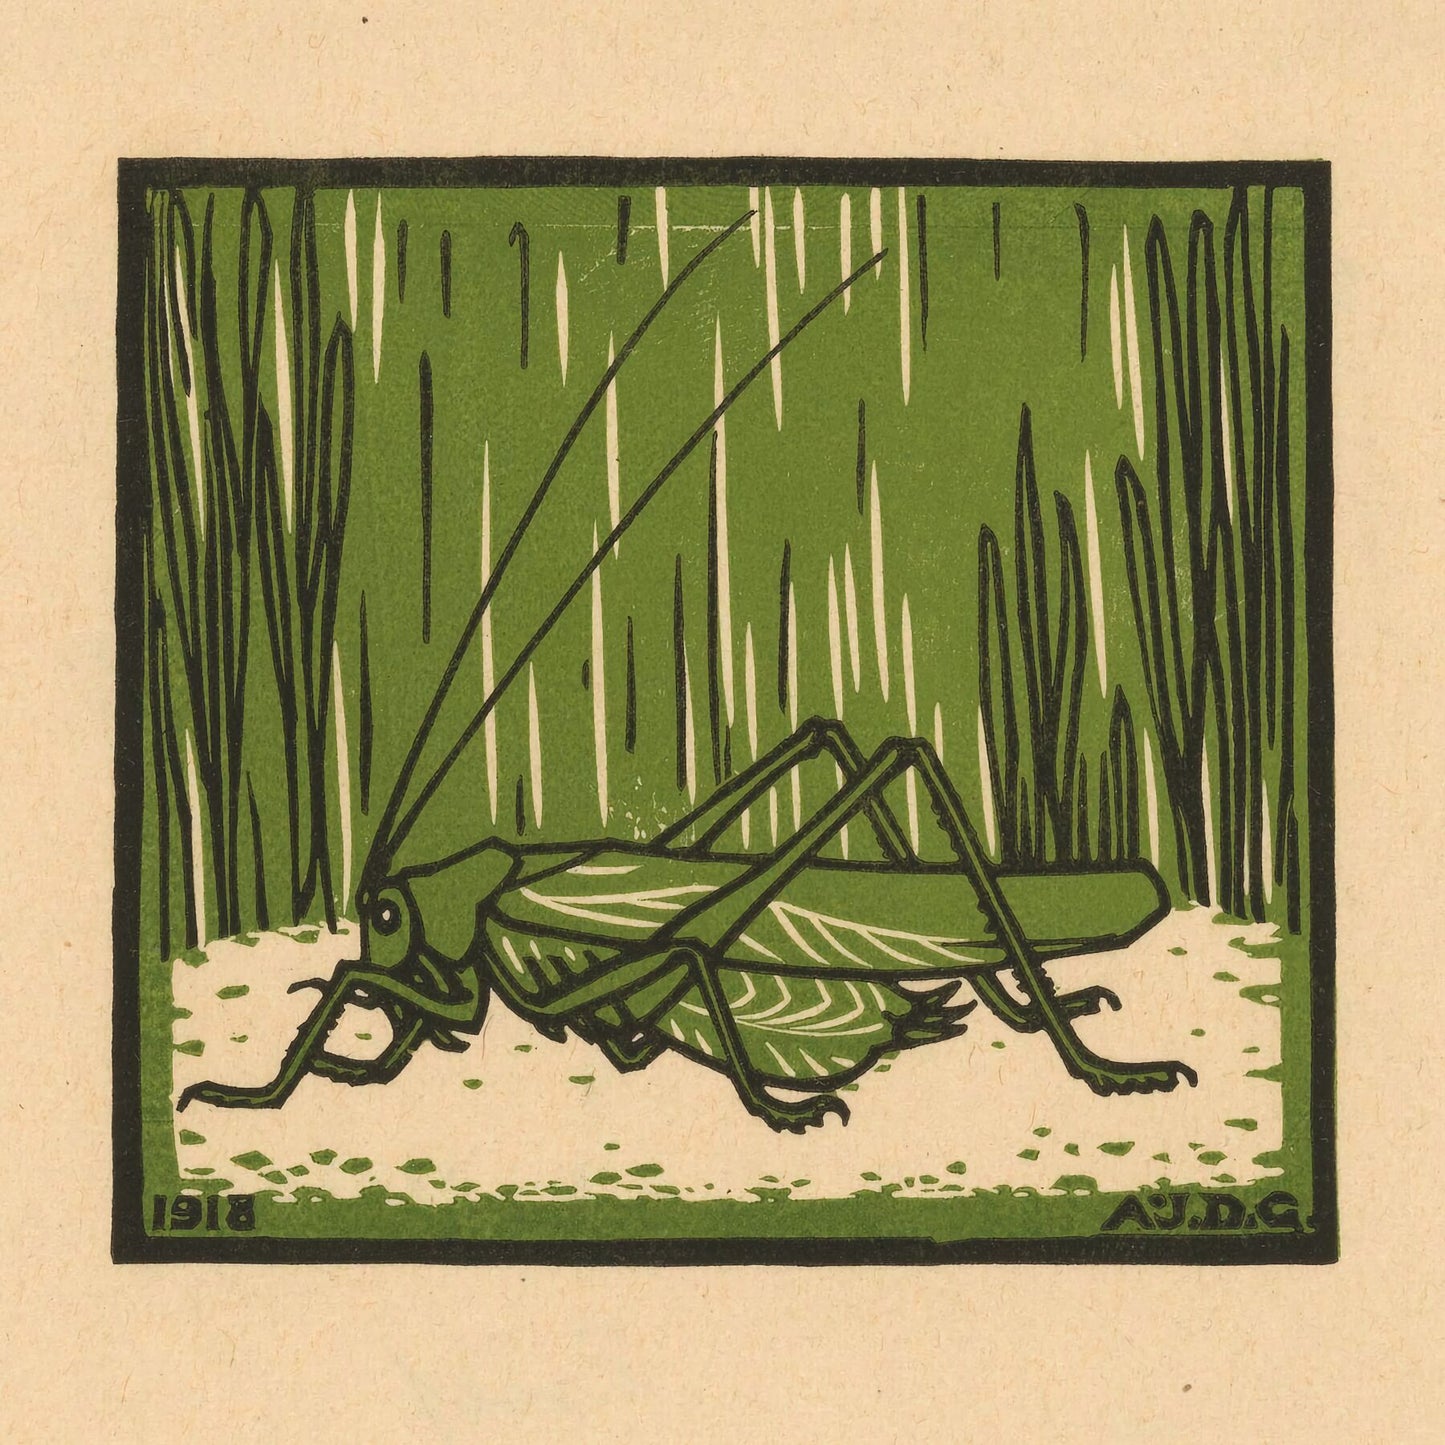 Grasshopper by Julie de Graag - 1918